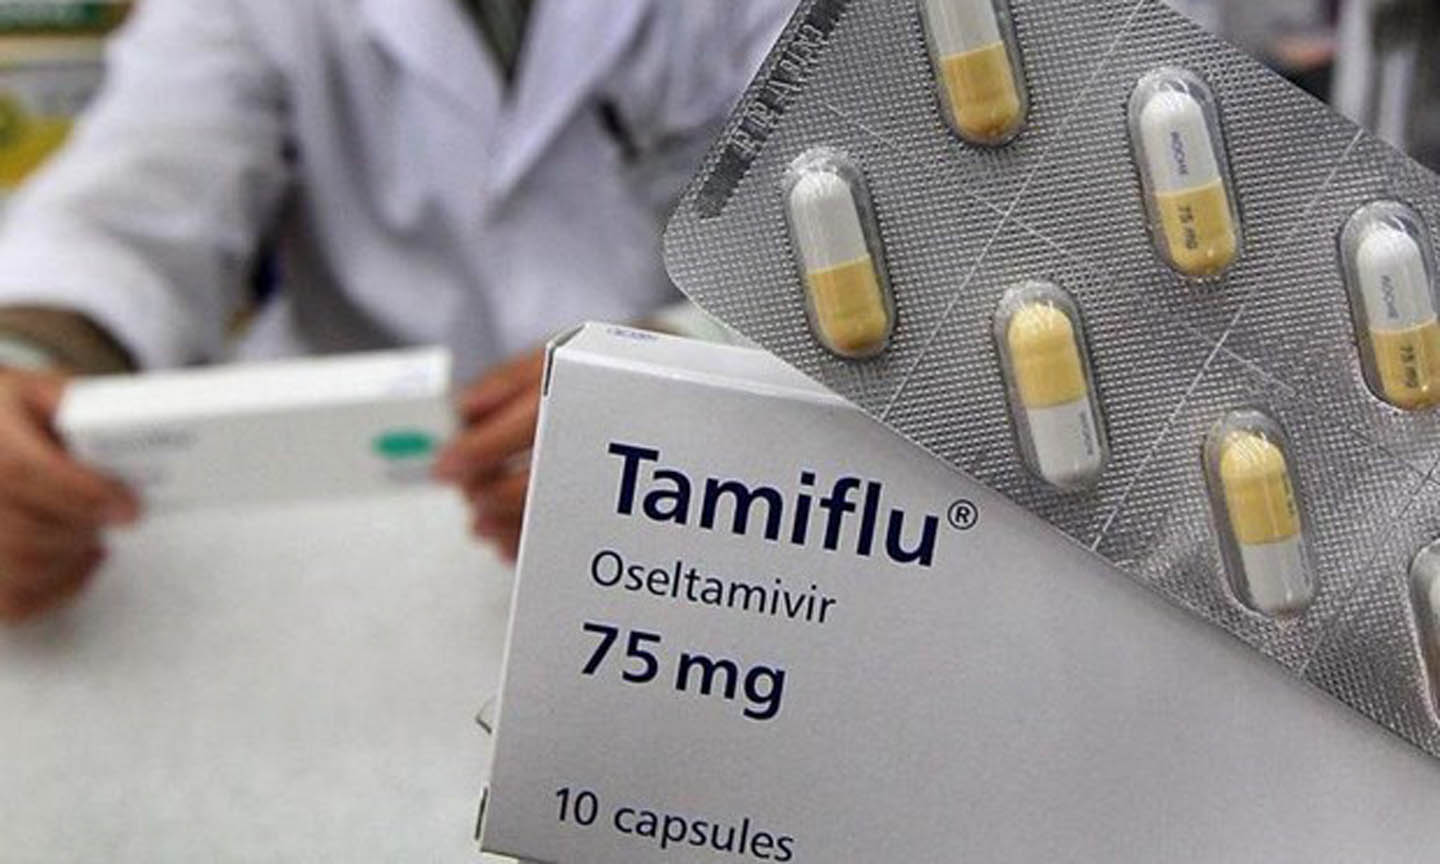 Thuốc Tamiflu giúp hỗ trợ trong điều trị bệnh cúm. (Nguồn: Yonhap/EPA)